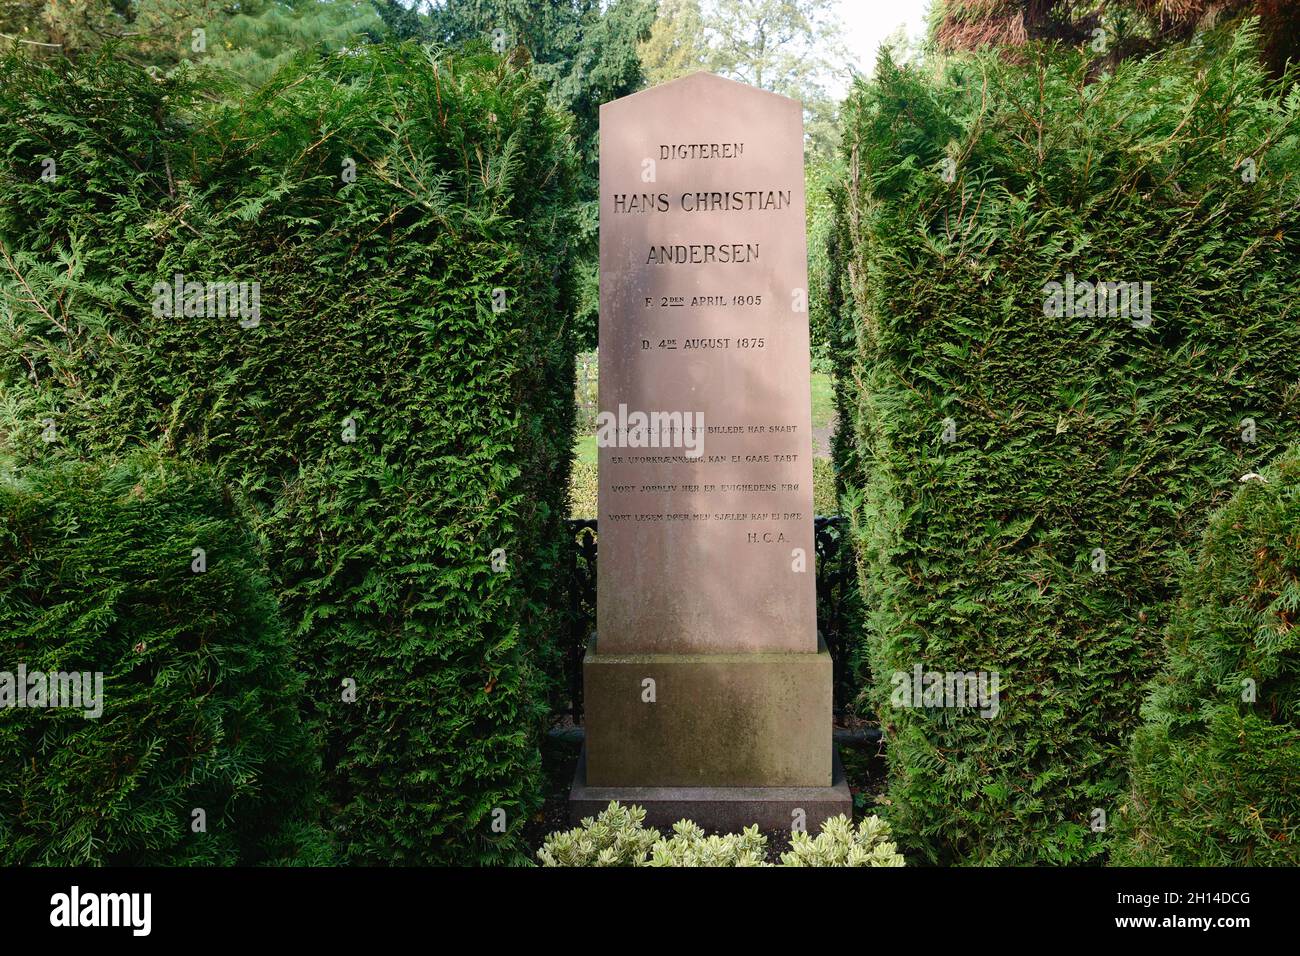 Tomba e lapide di Hans Christian Andersen, famoso scrittore, cimitero di Assistens, Nørrebro, Copenaghen, Danimarca, Scandinavia, ottobre 2021 Foto Stock